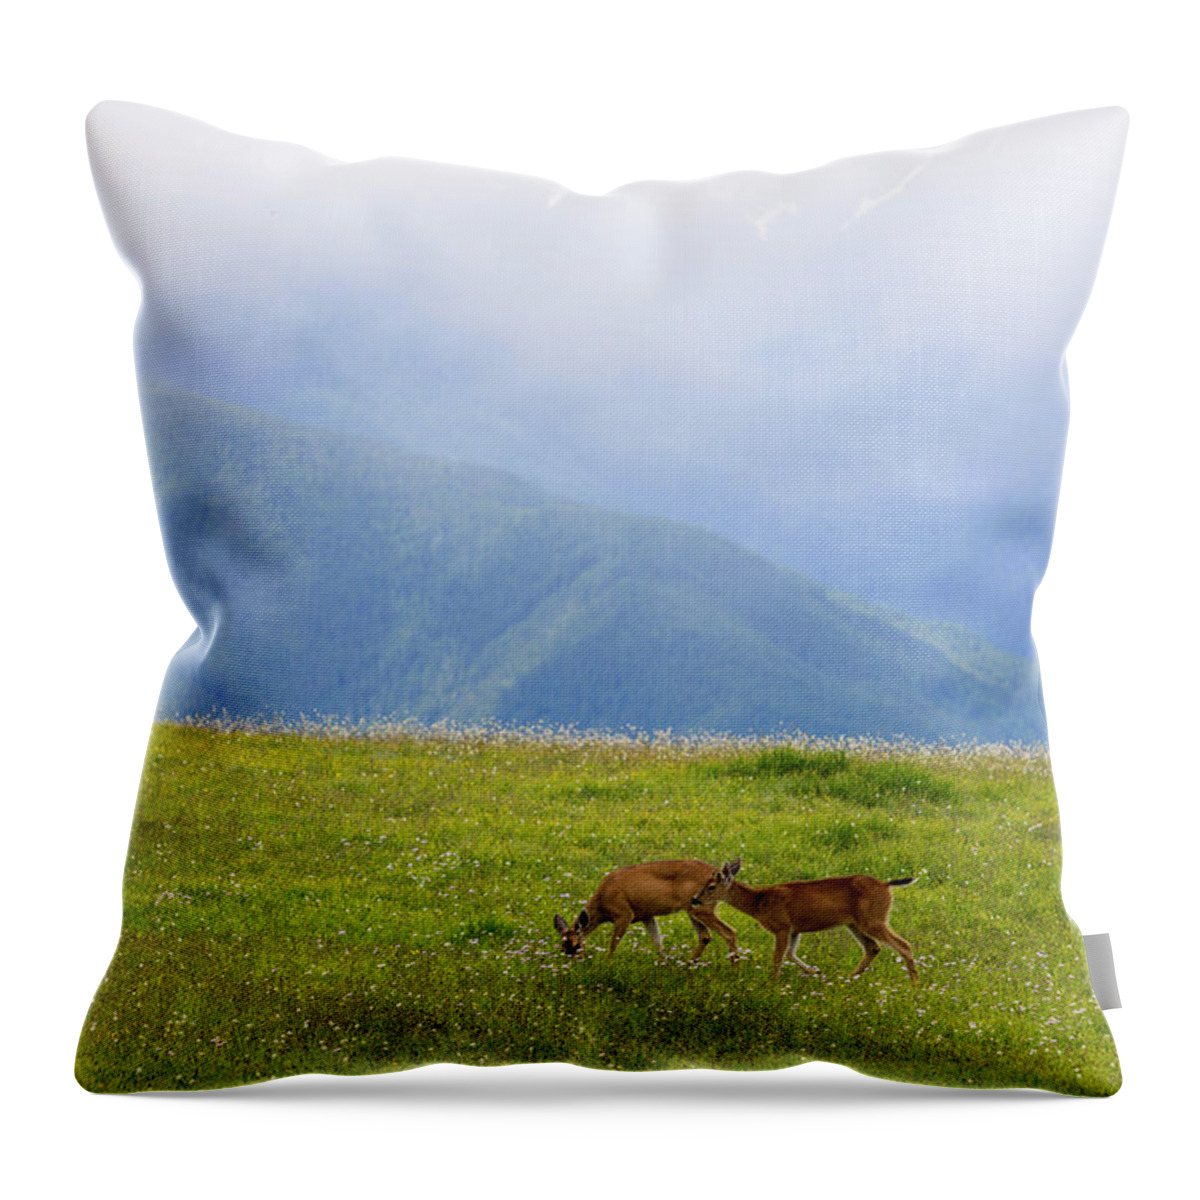 Deer Throw Pillow featuring the digital art Deer in browse by Michael Lee